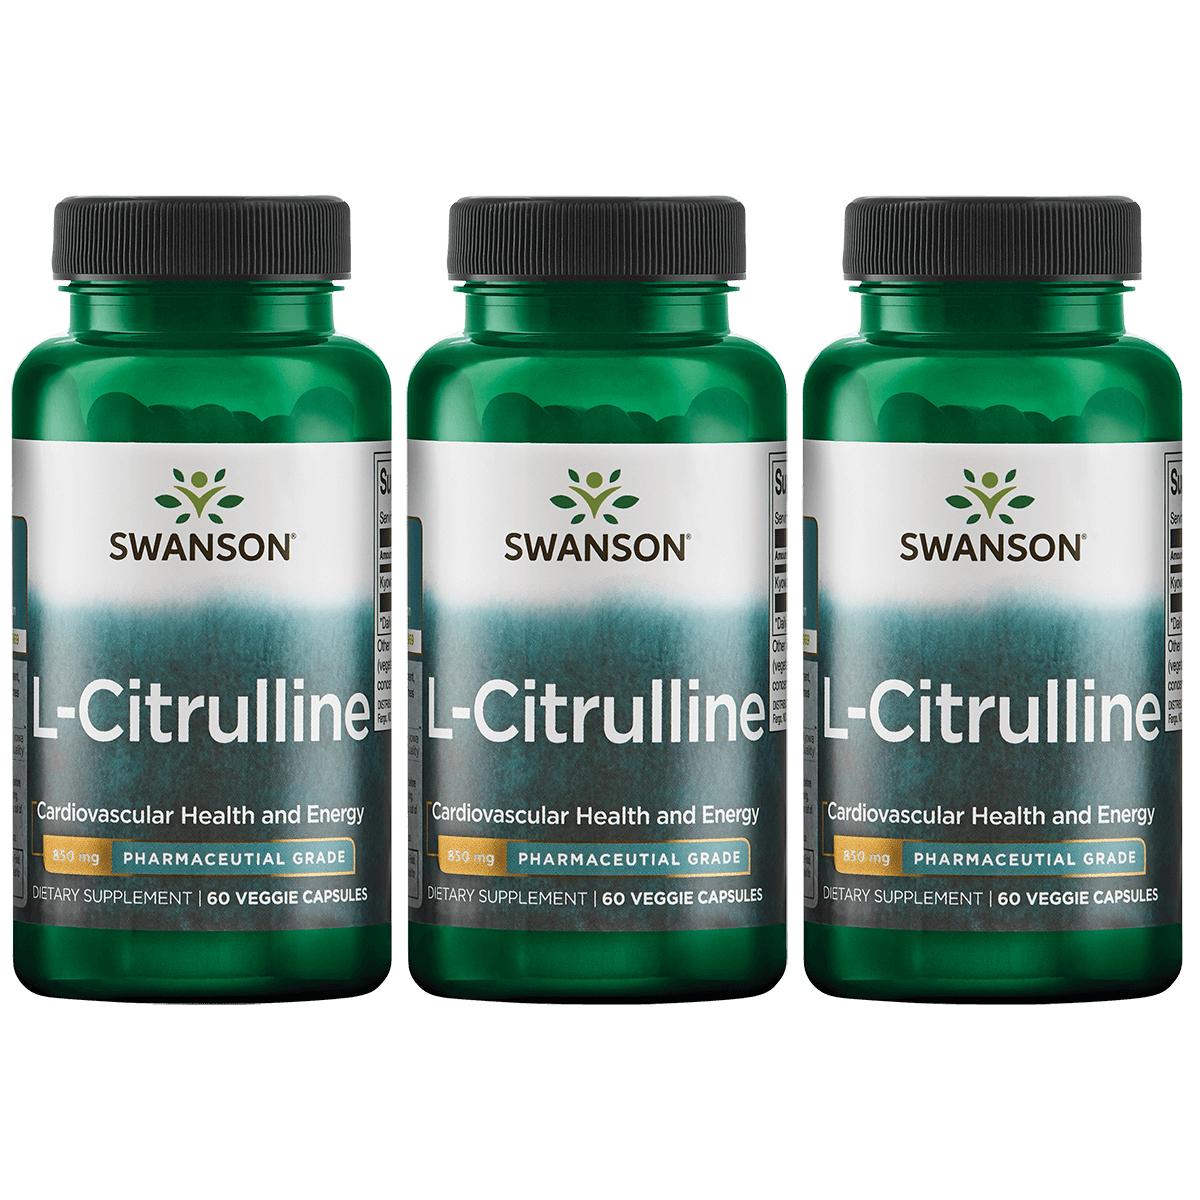 Swanson Ultra L-Citrulline - Pharmaceutical Grade 3 Pack Vitamin 850 mg 60 Veg Caps